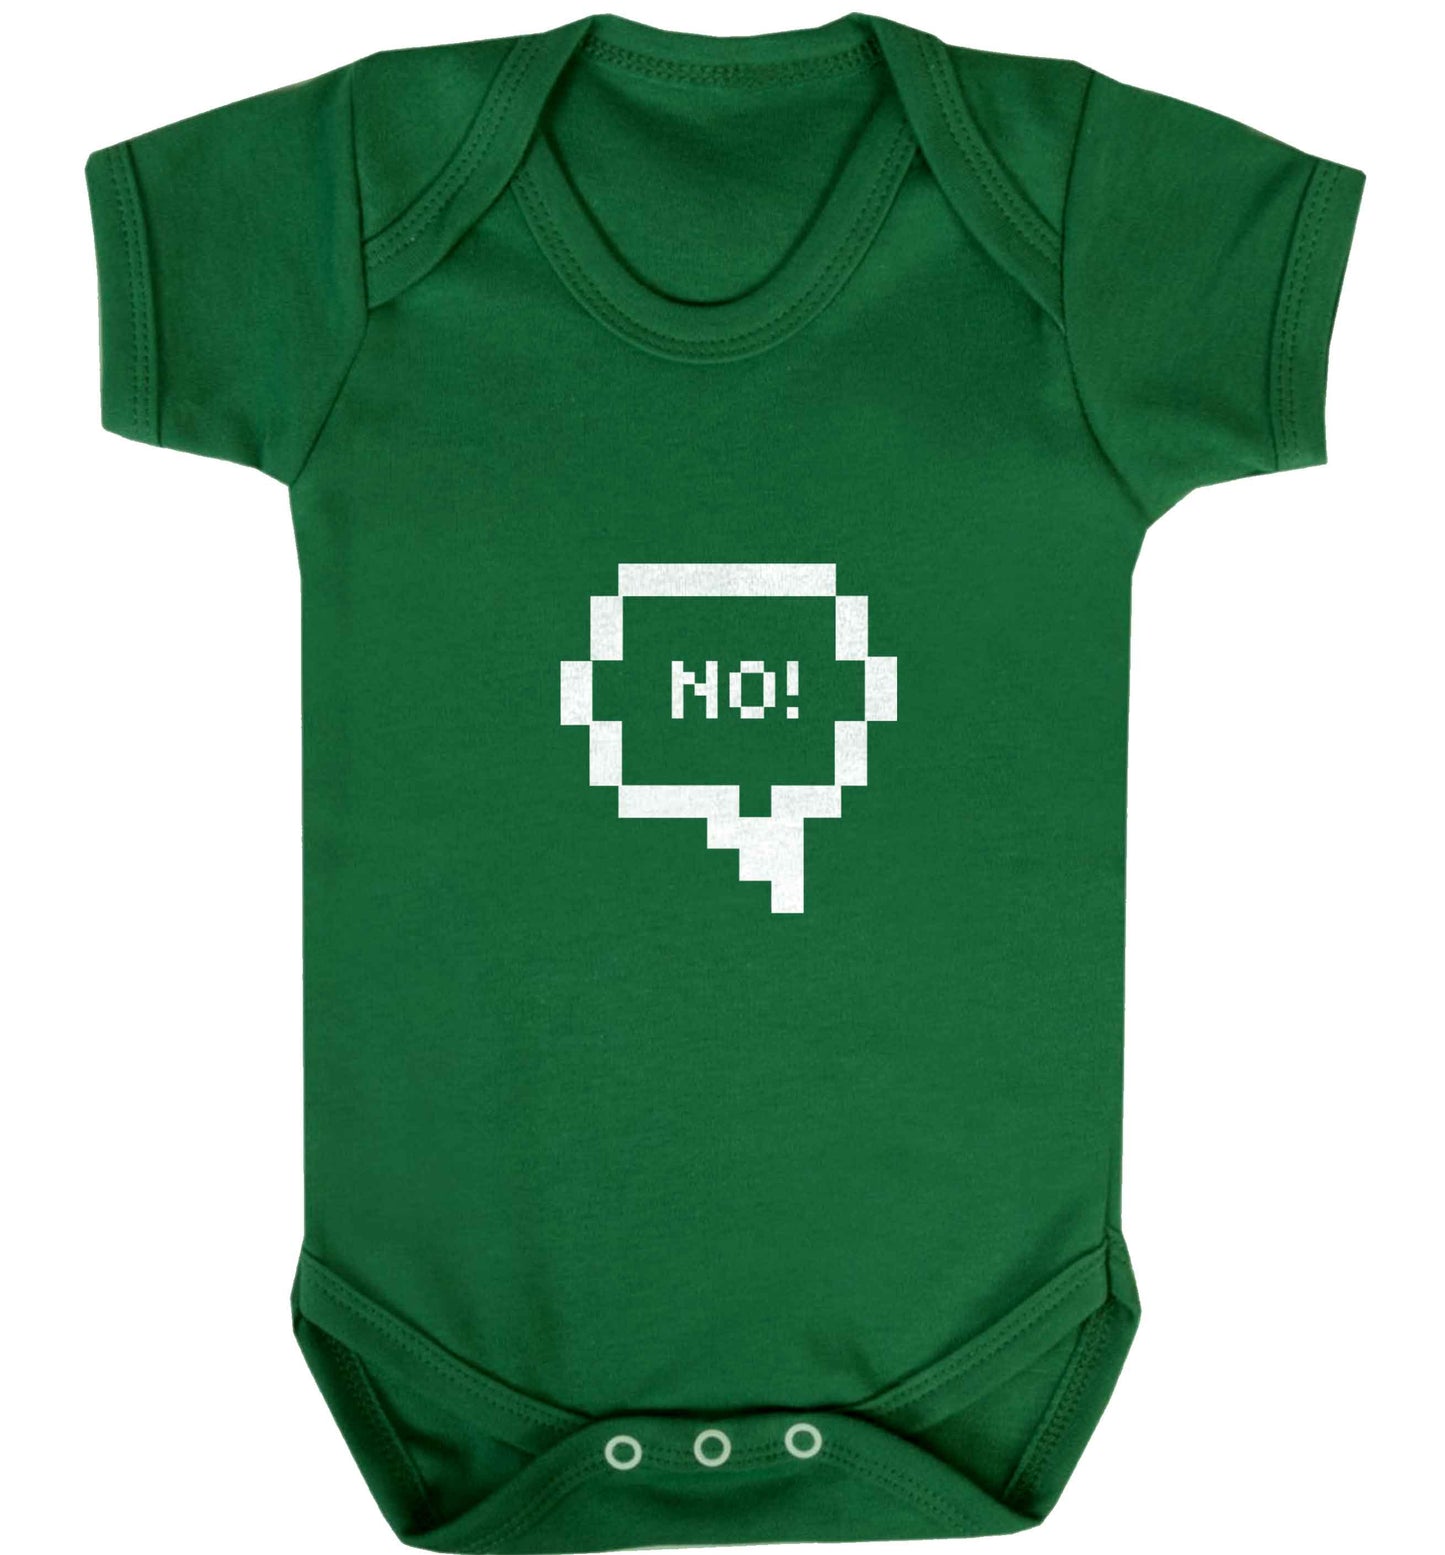 No baby vest green 18-24 months